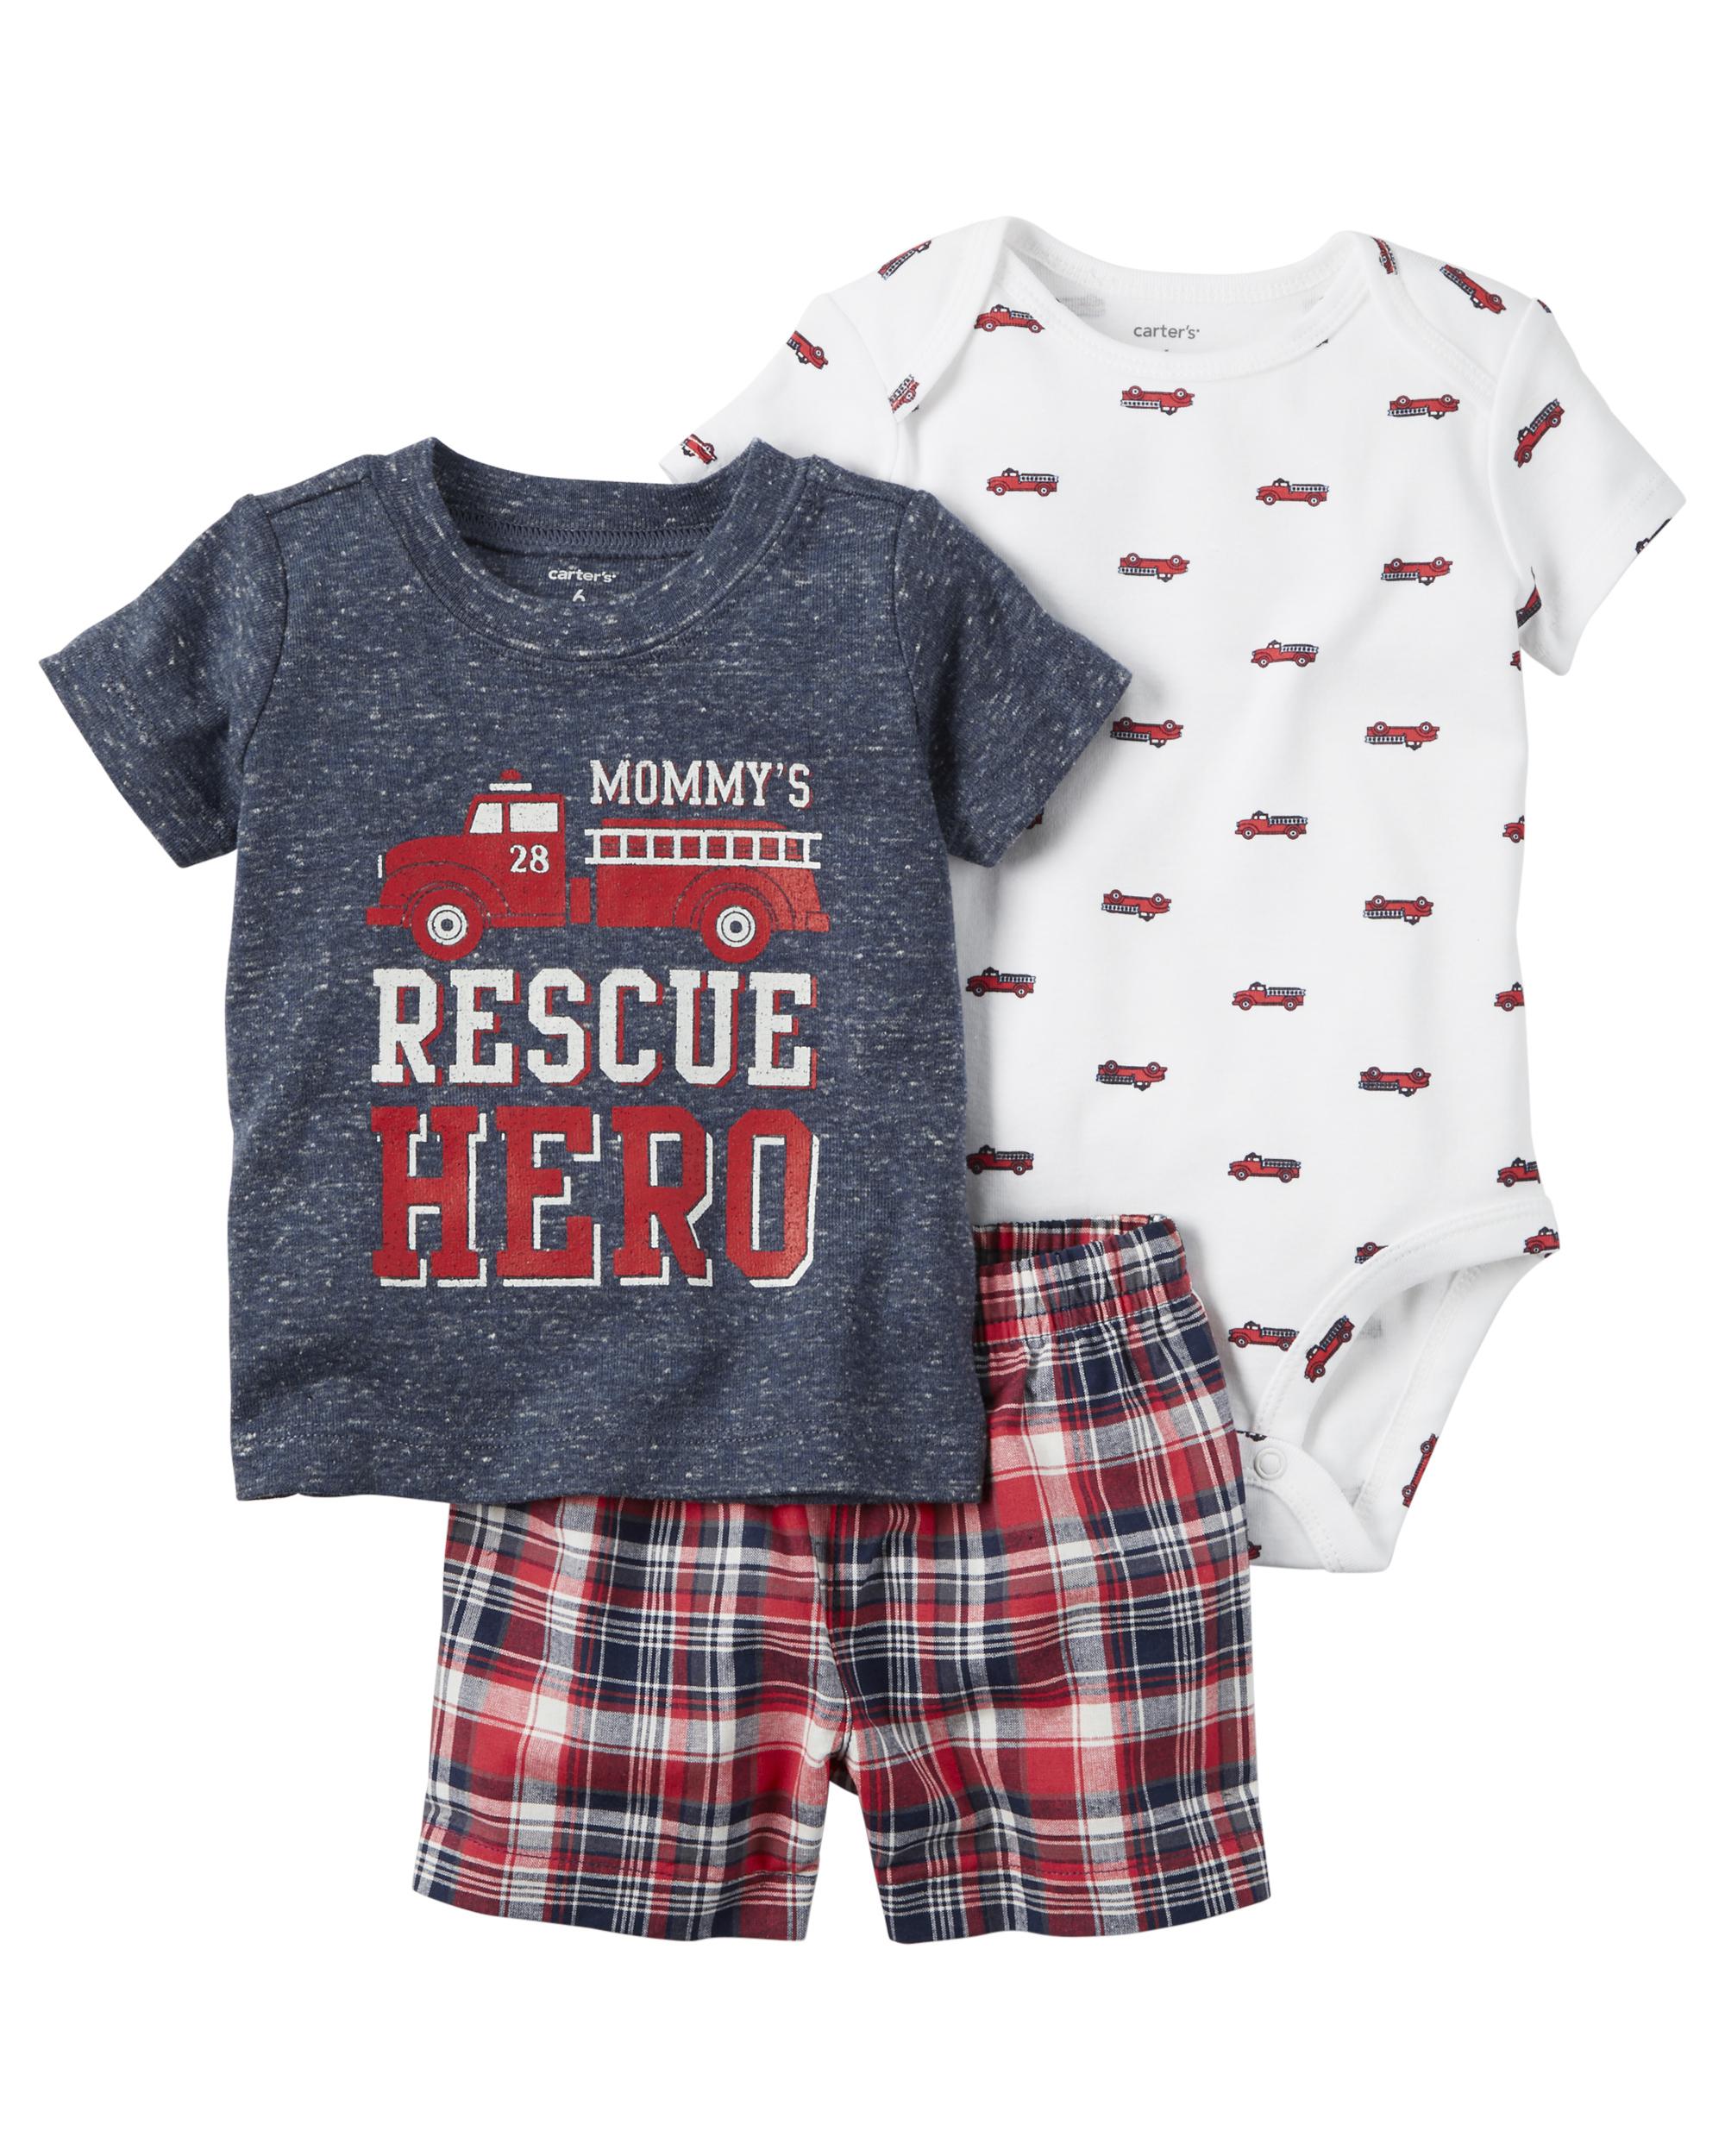 Carter's Newborn & Infant Boys' Bodysuit, T-Shirt & Shorts - Firetruck